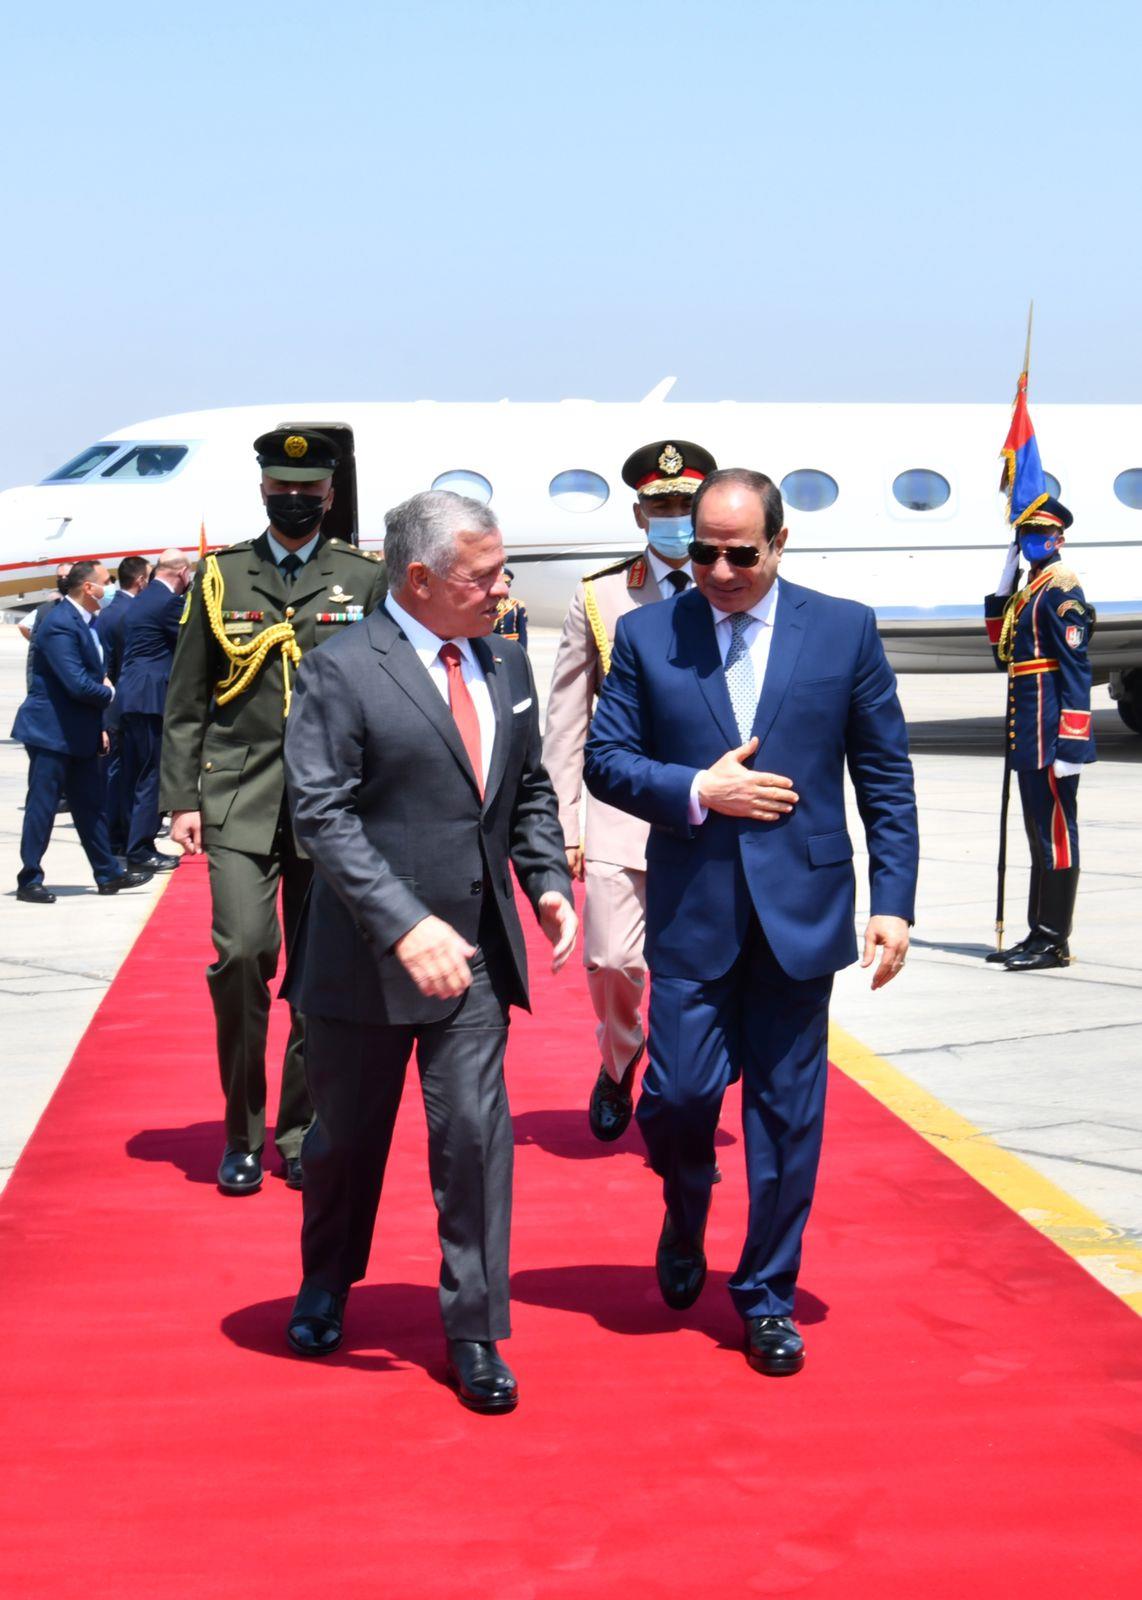 انطلاق أعمال القمة الثلاثية المصرية الأردنية الفلسطينية بالاتحادية